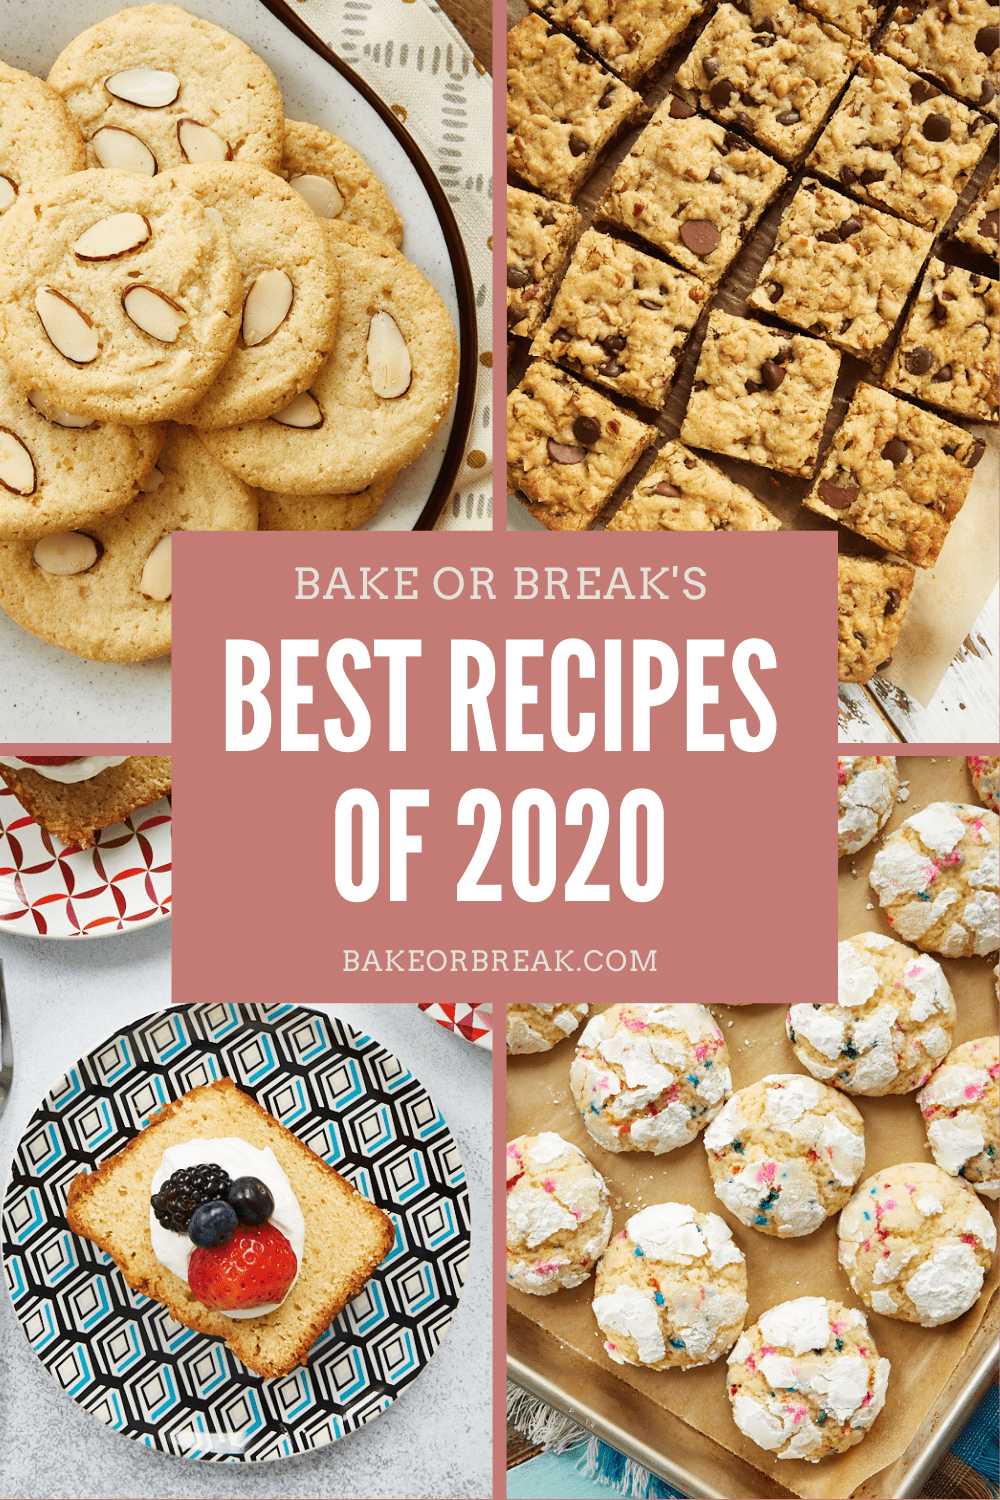 Bake or Break's Best Recipes of 2020 bakeorbreak.com